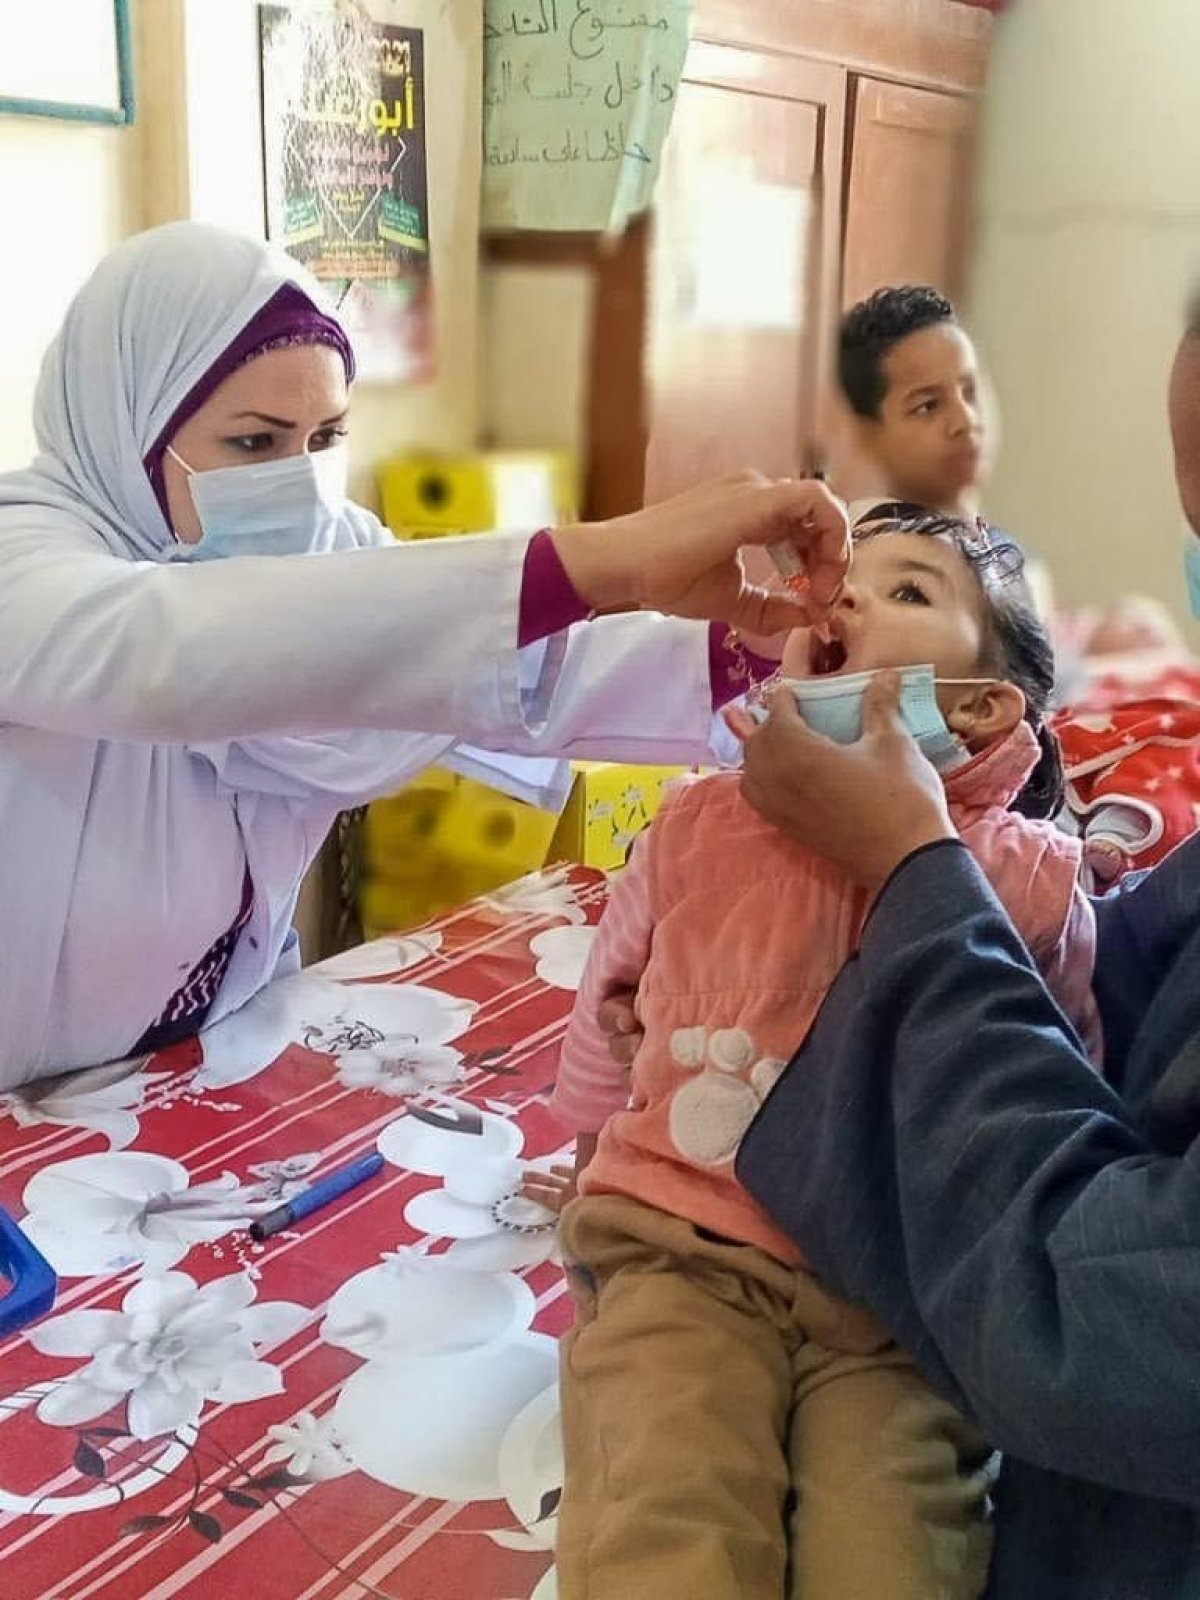 وزيرة الصحة تعلن مد فترة الحملة القومية الثانية للتطعيم ضد مرض شلل الأطفال حتى غداً الجمعة 2 إبريل